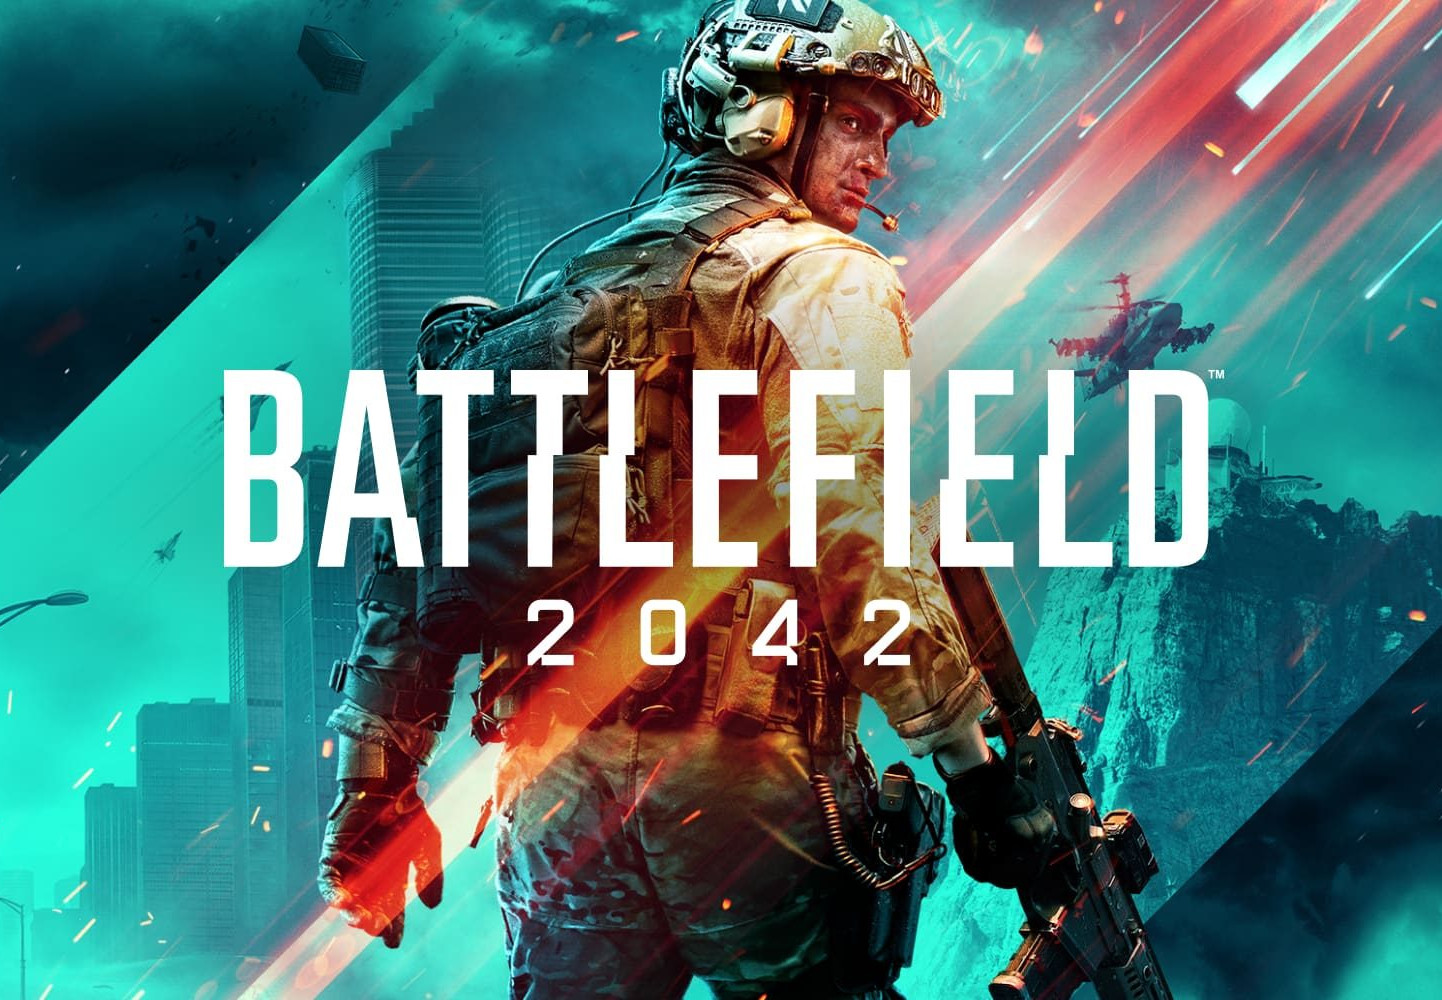 Battlefield 2042 Steam Account